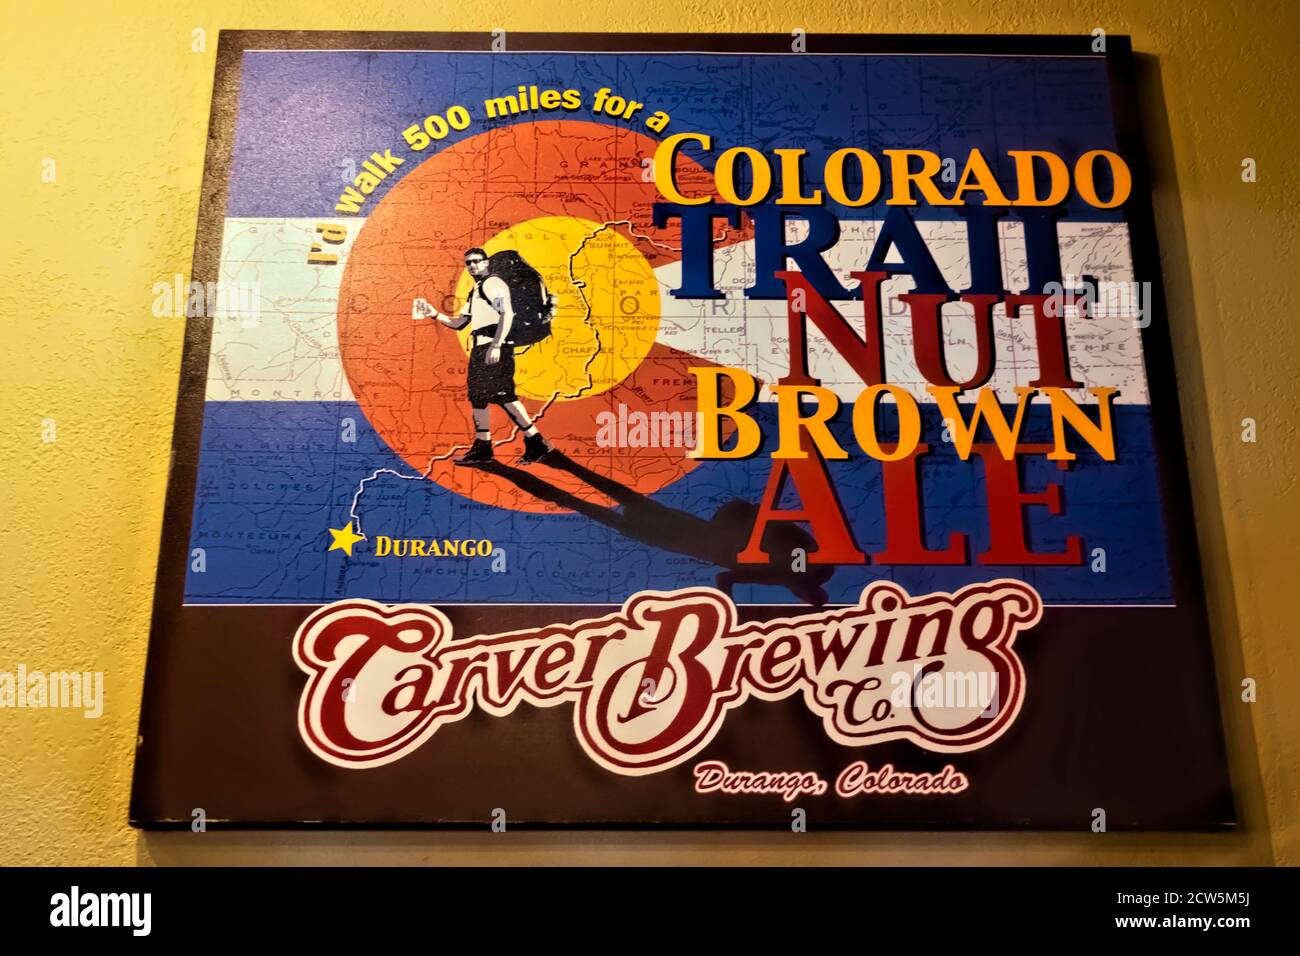 Carver Brewery’s Colorado Trail Ale,  Durango, Colorado Stock Photo